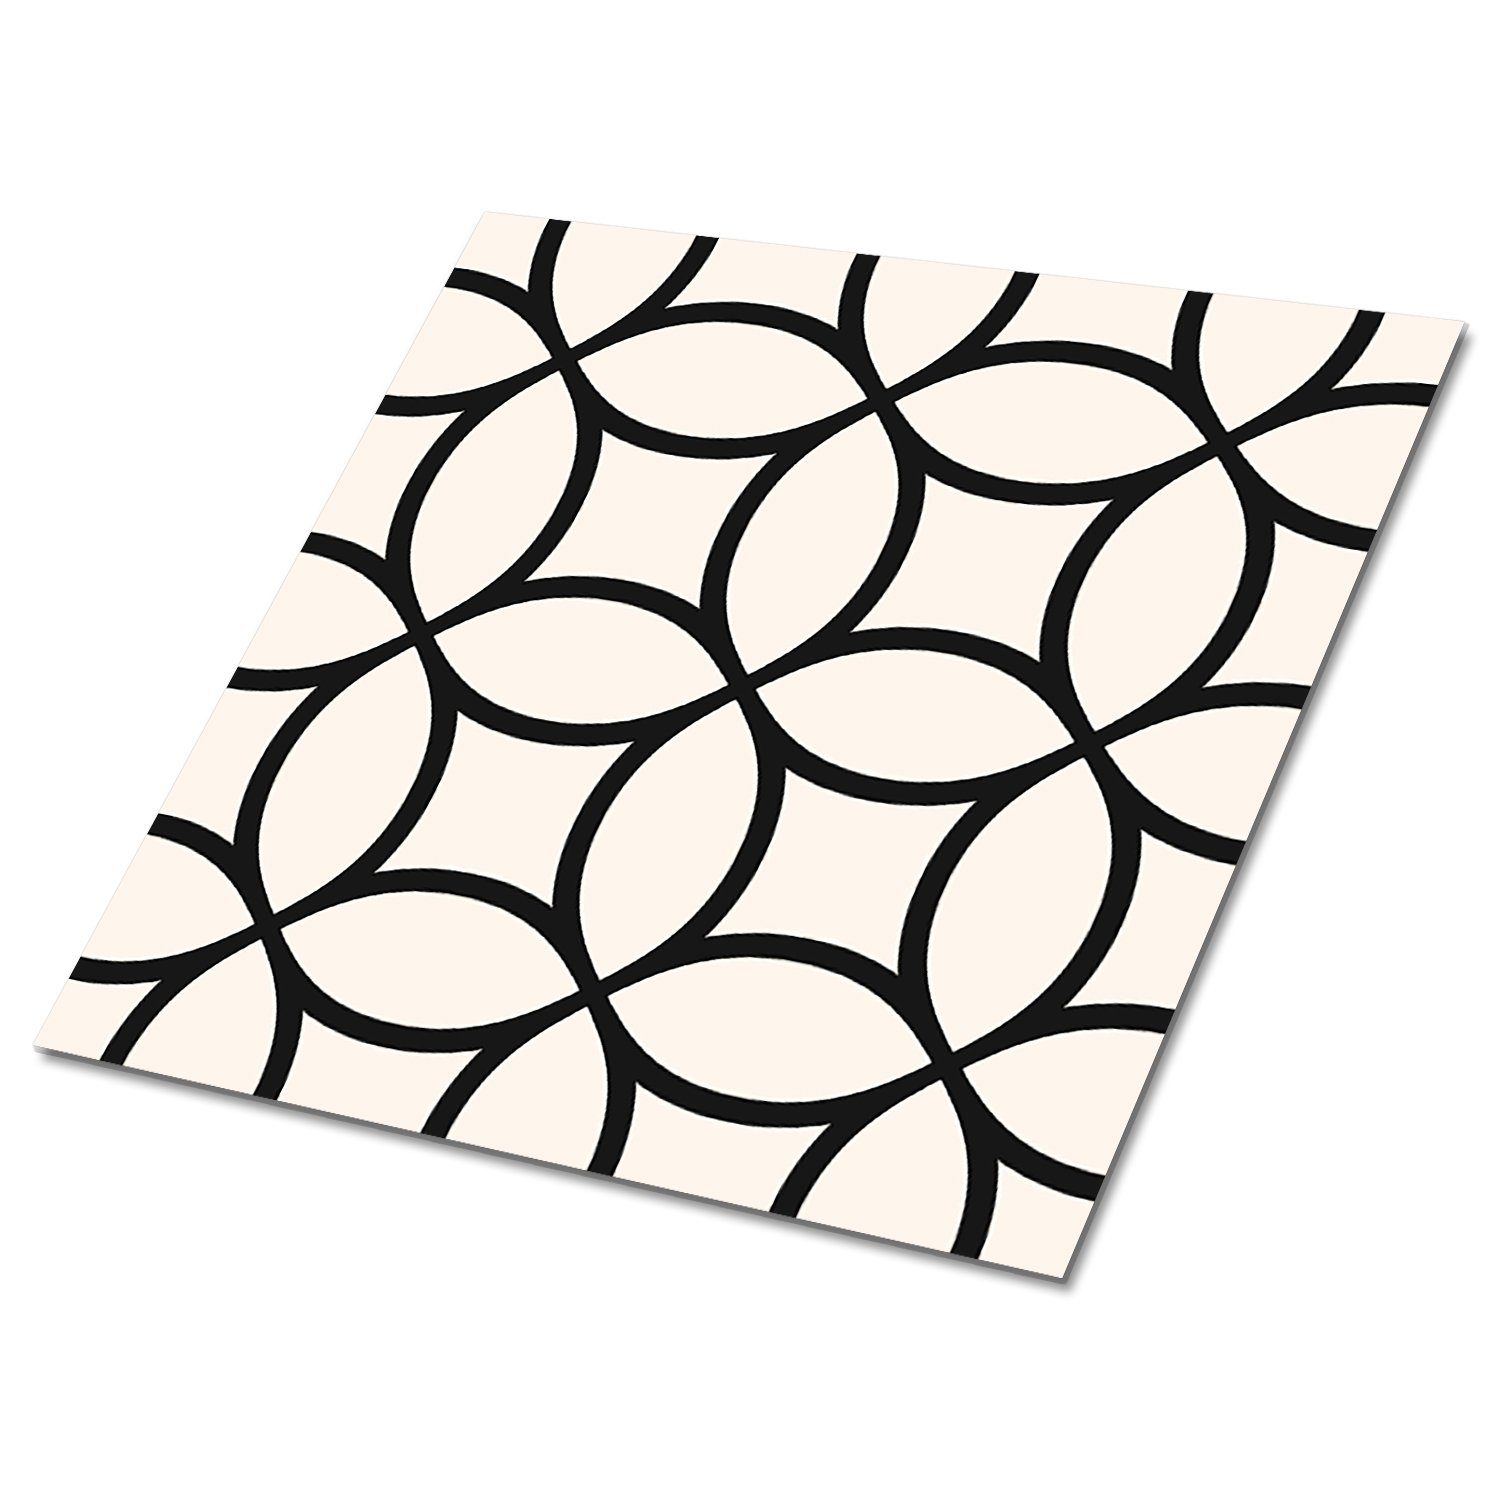 Tulup Vinylfliesen Selbstklebende Fliesen Platten 30 cm x 30 cm Wandpaneele 9 Stück PVC Geometrische Räder